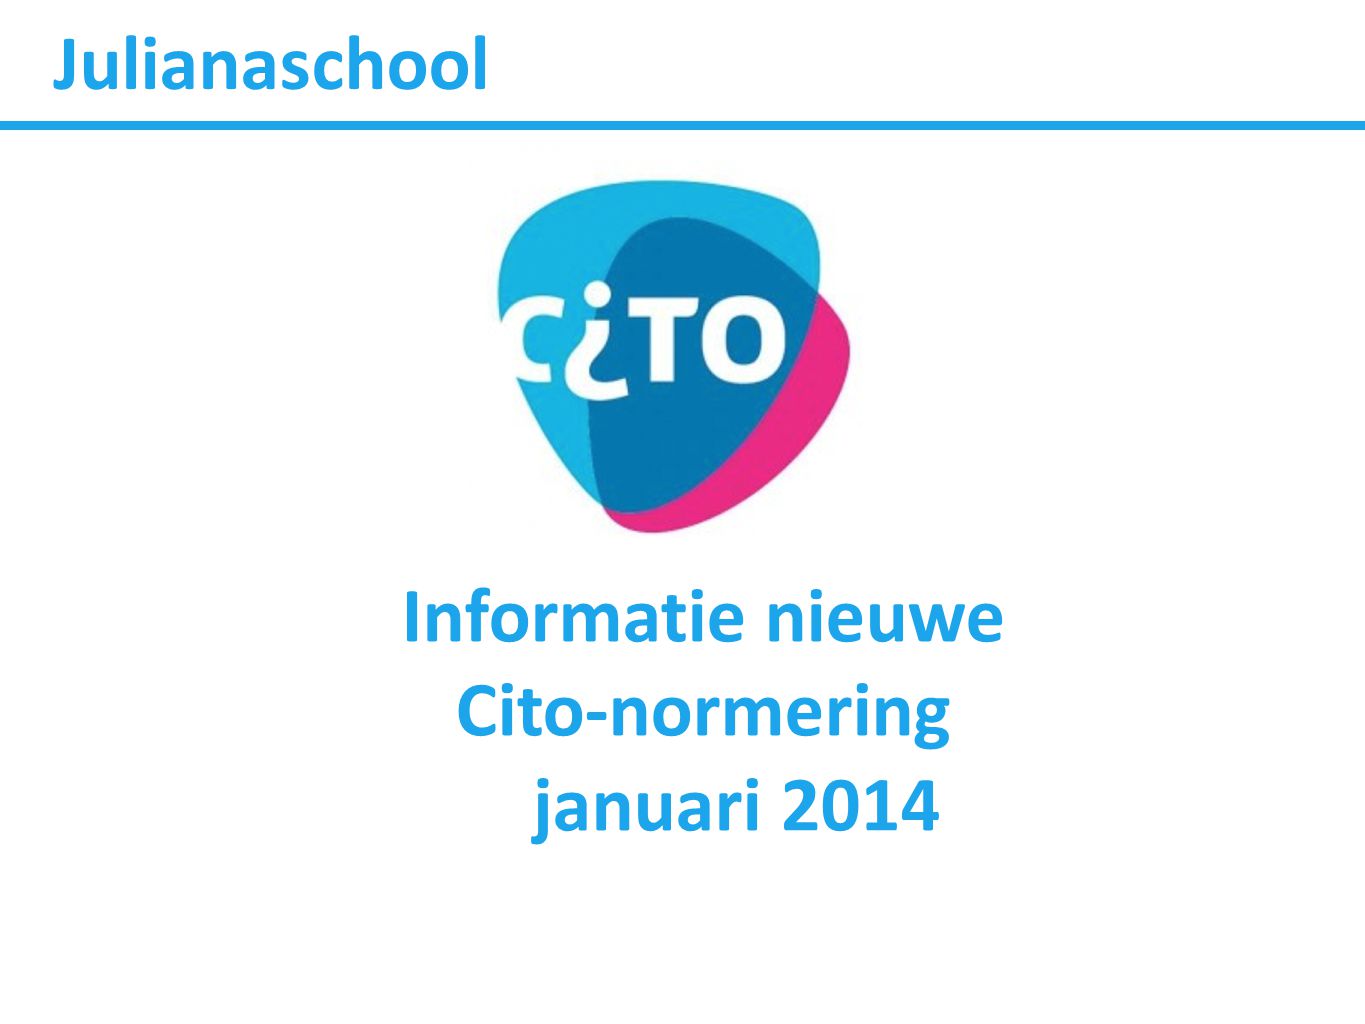 Julianaschool Informatie nieuwe Cito-normering januari 2014